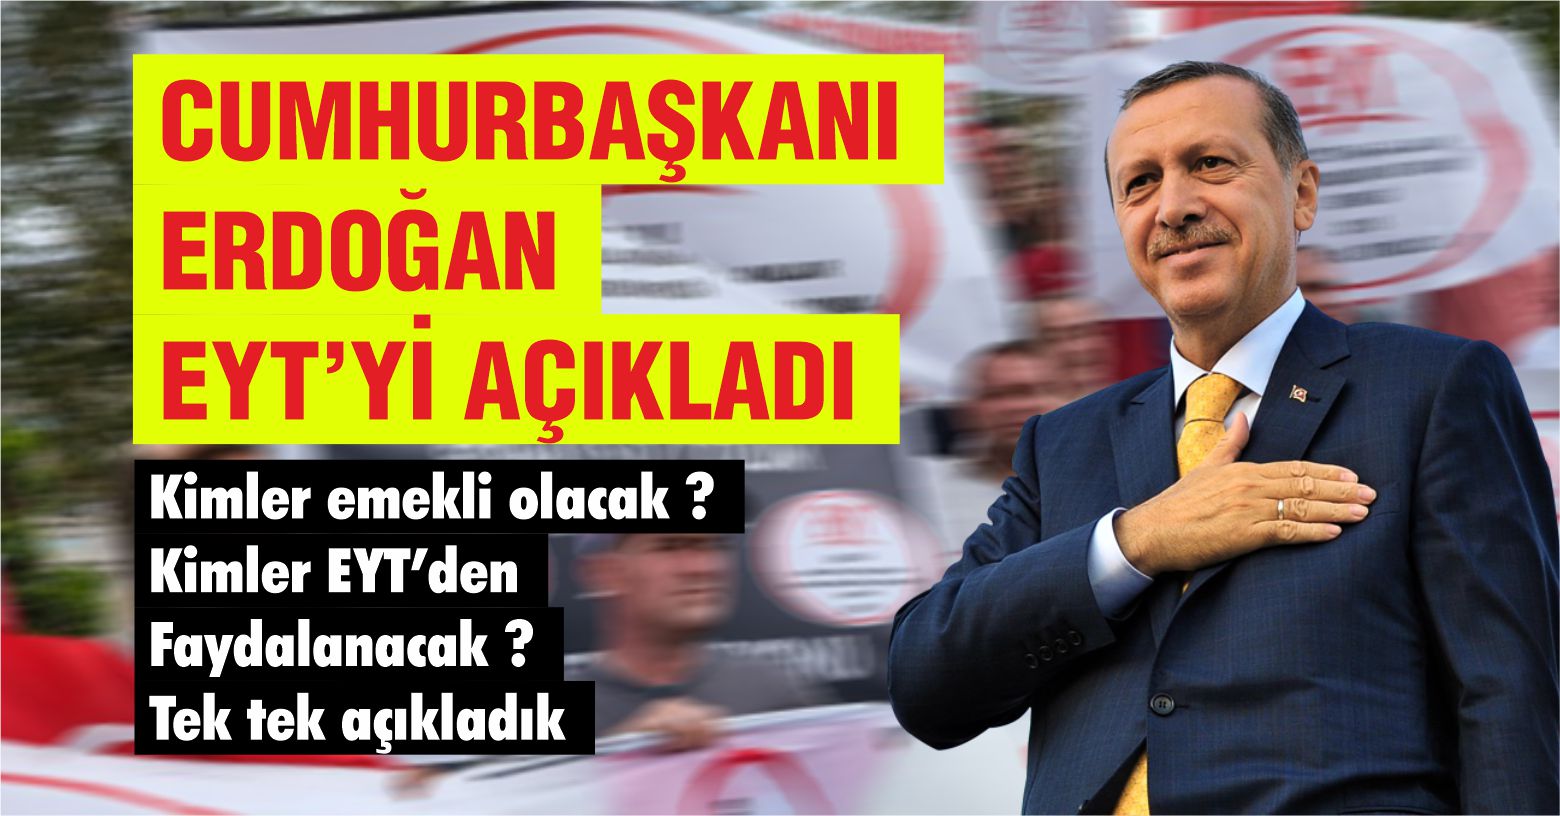 Cumhurbaşkanı Erdoğan EYT’yi Açıkladı. Kimler Faydalanacak